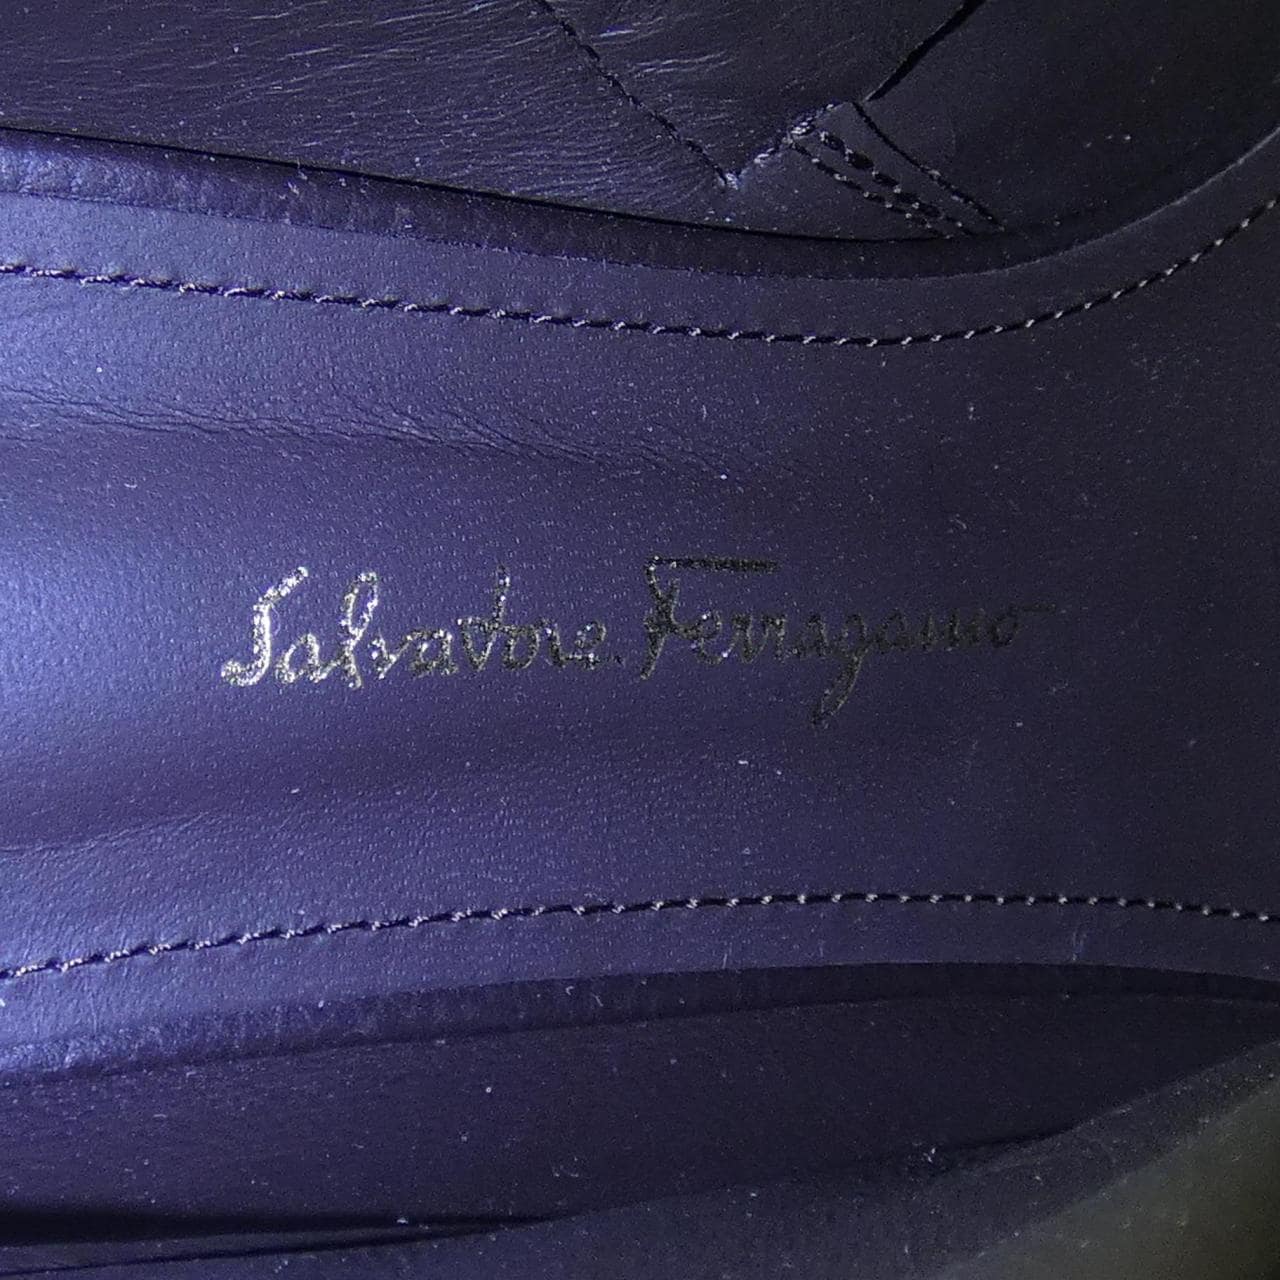 薩爾瓦托雷·菲拉格慕SALVATORE FERRAGAMO薩爾瓦托雷·菲拉格慕 (Salvatore Ferragamo) 靴子